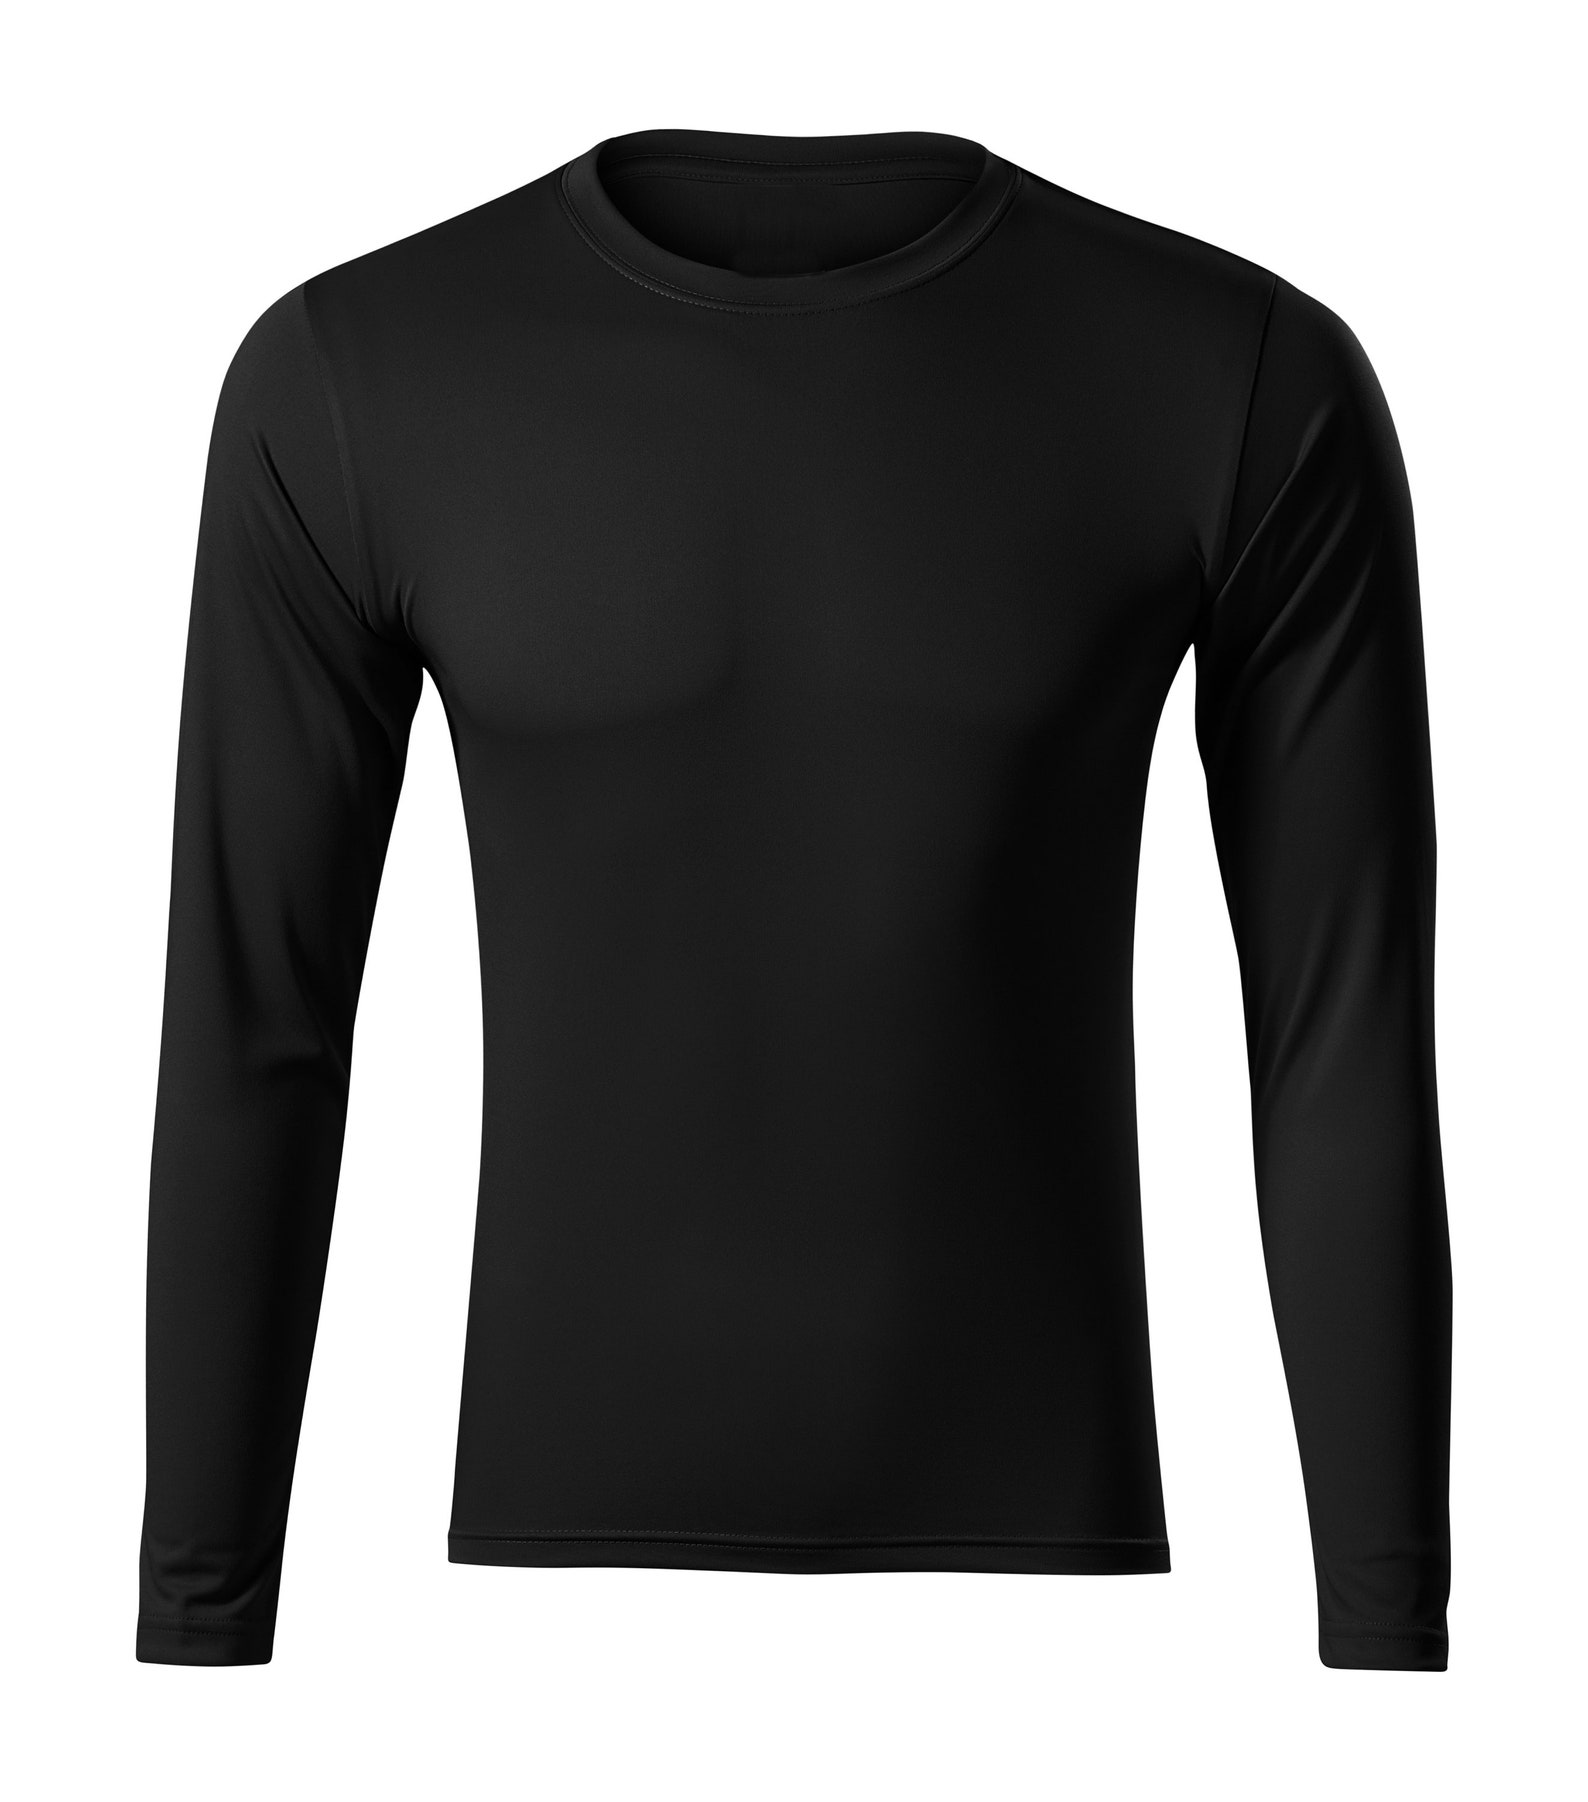 Blank Sport Long SLeeve Athletic Unisex Tee Shirt Extremely | Etsy